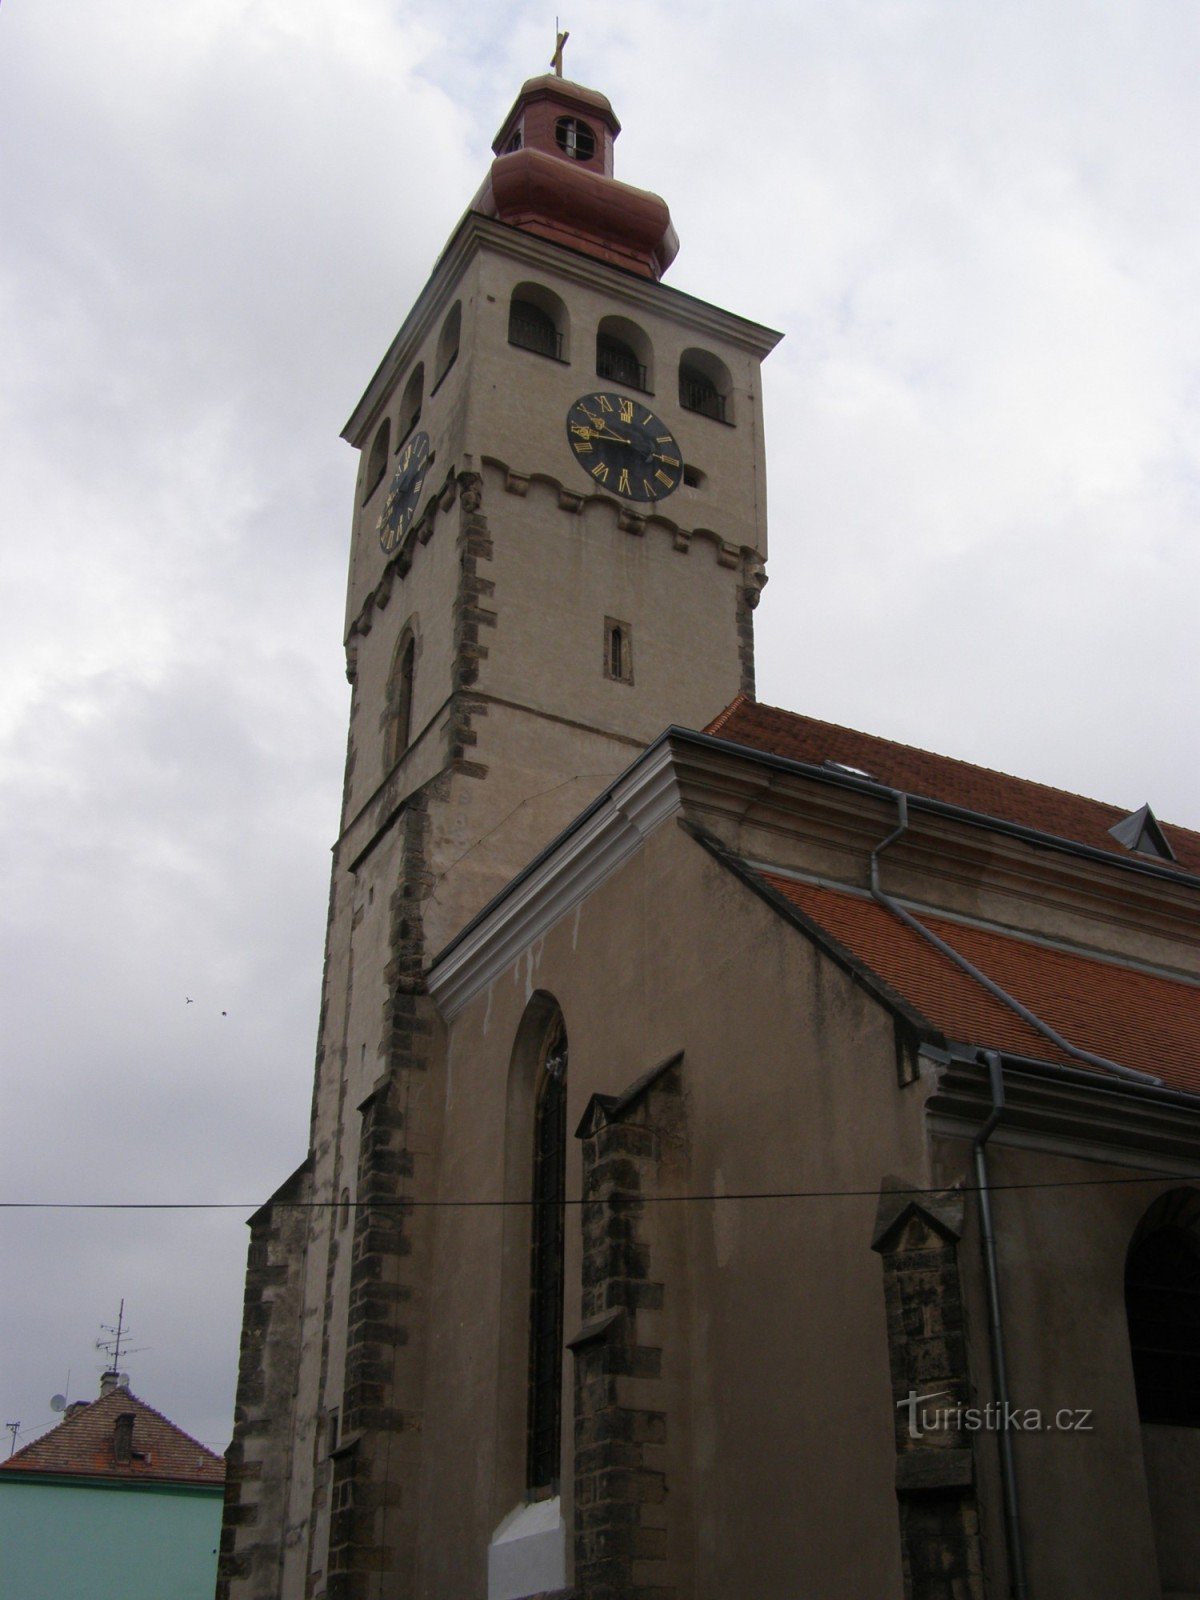 Nový Bydžov - church of St. Lawrence